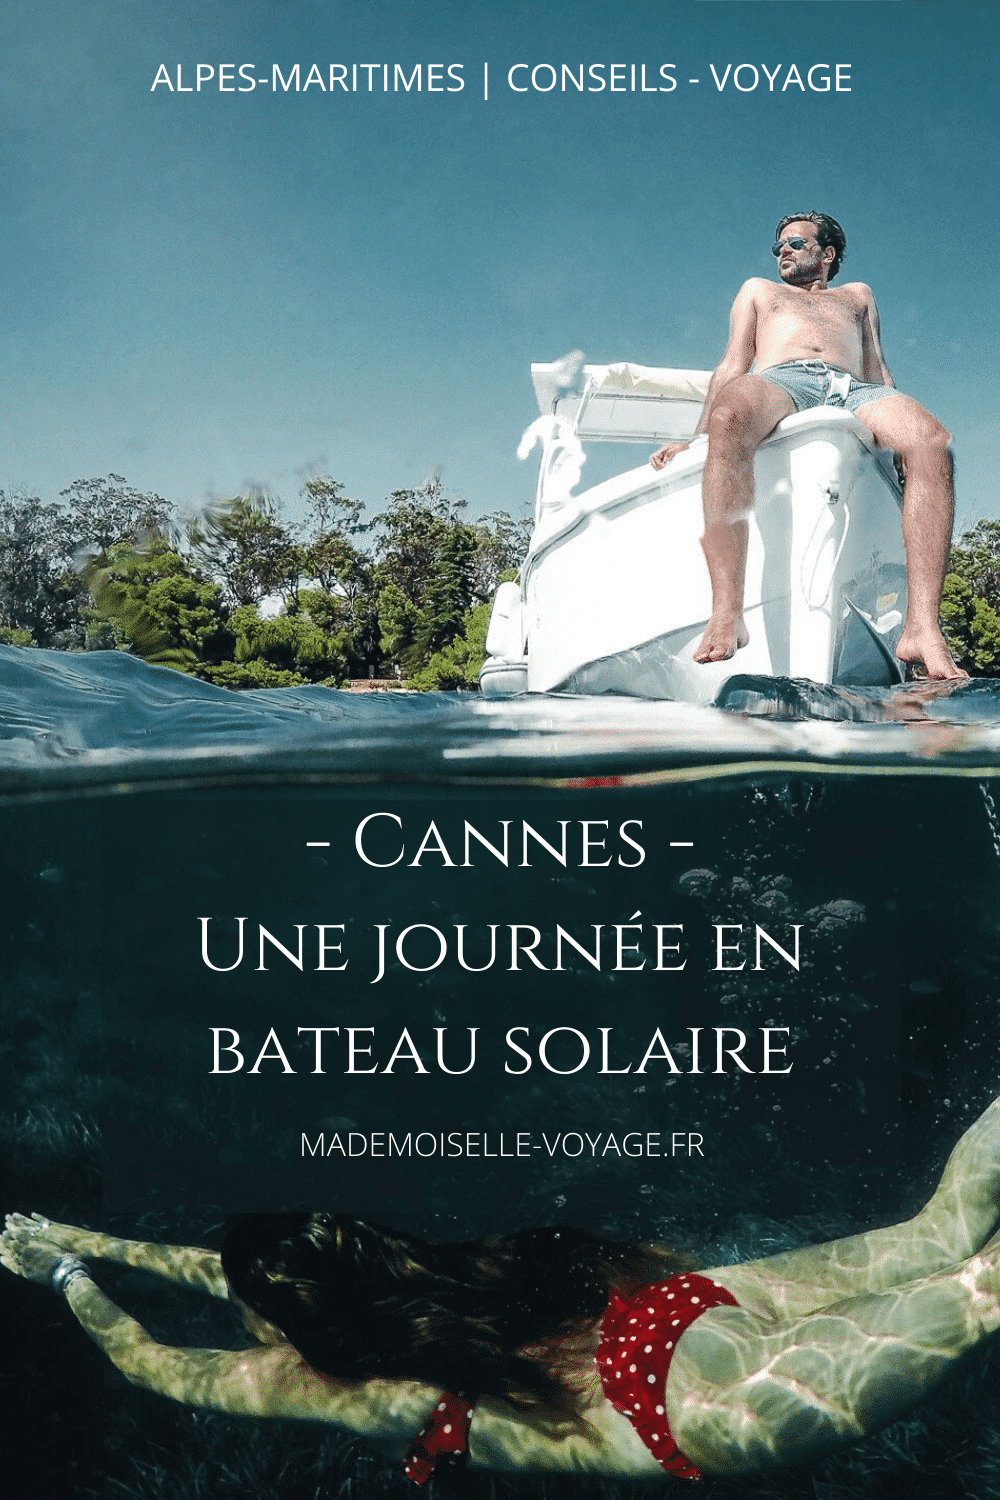 France | Cannes | location | bateau solaire | sans permis | îles lerins | mademoiselle-voyage